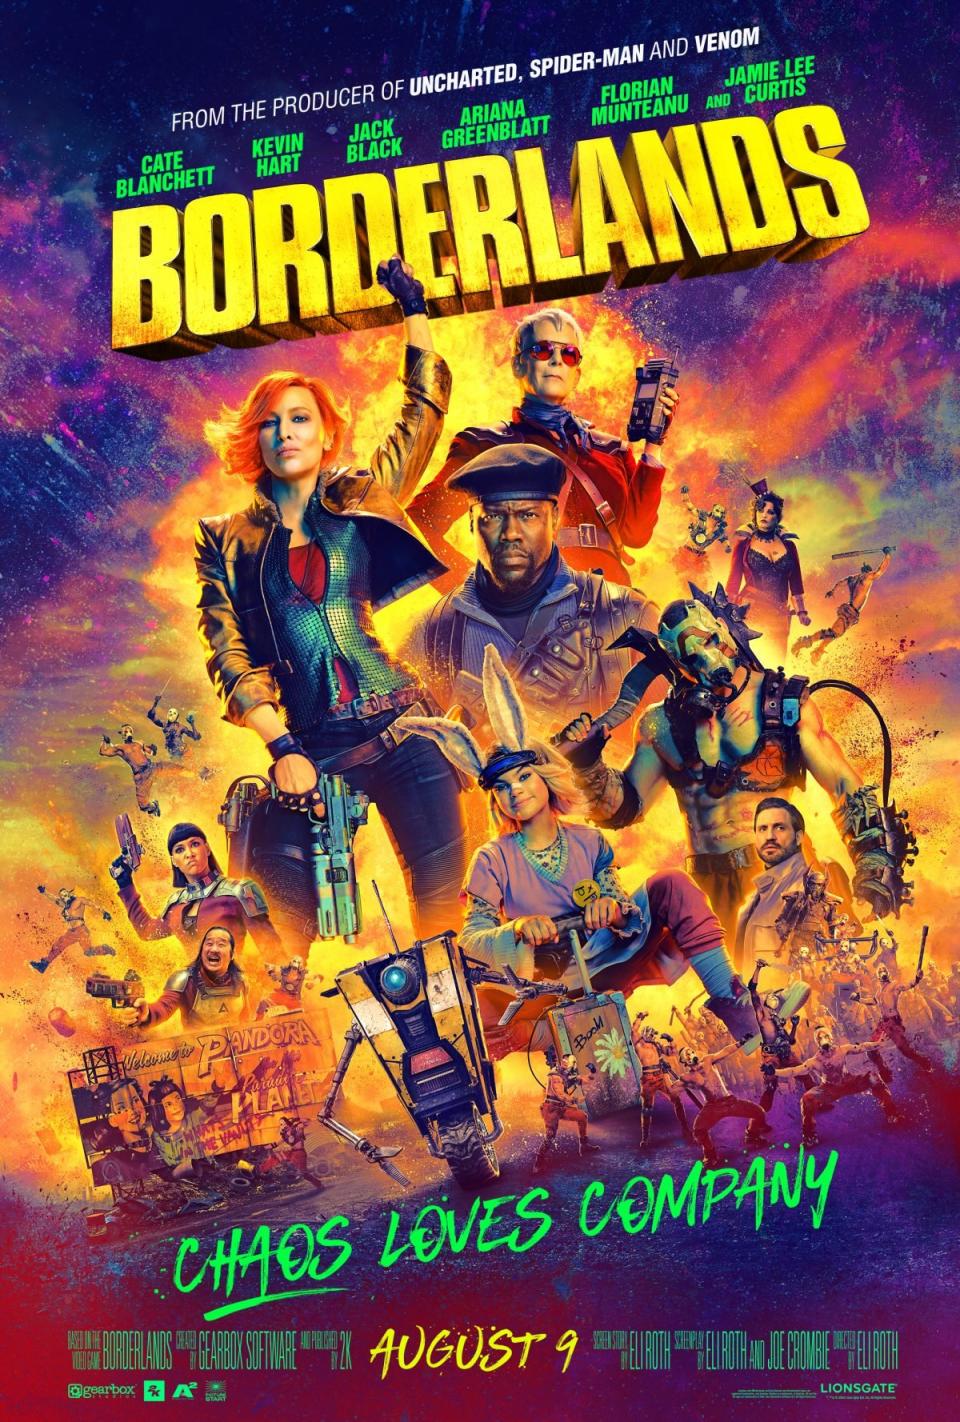 Borderlands official poster celebrating ensamble cast